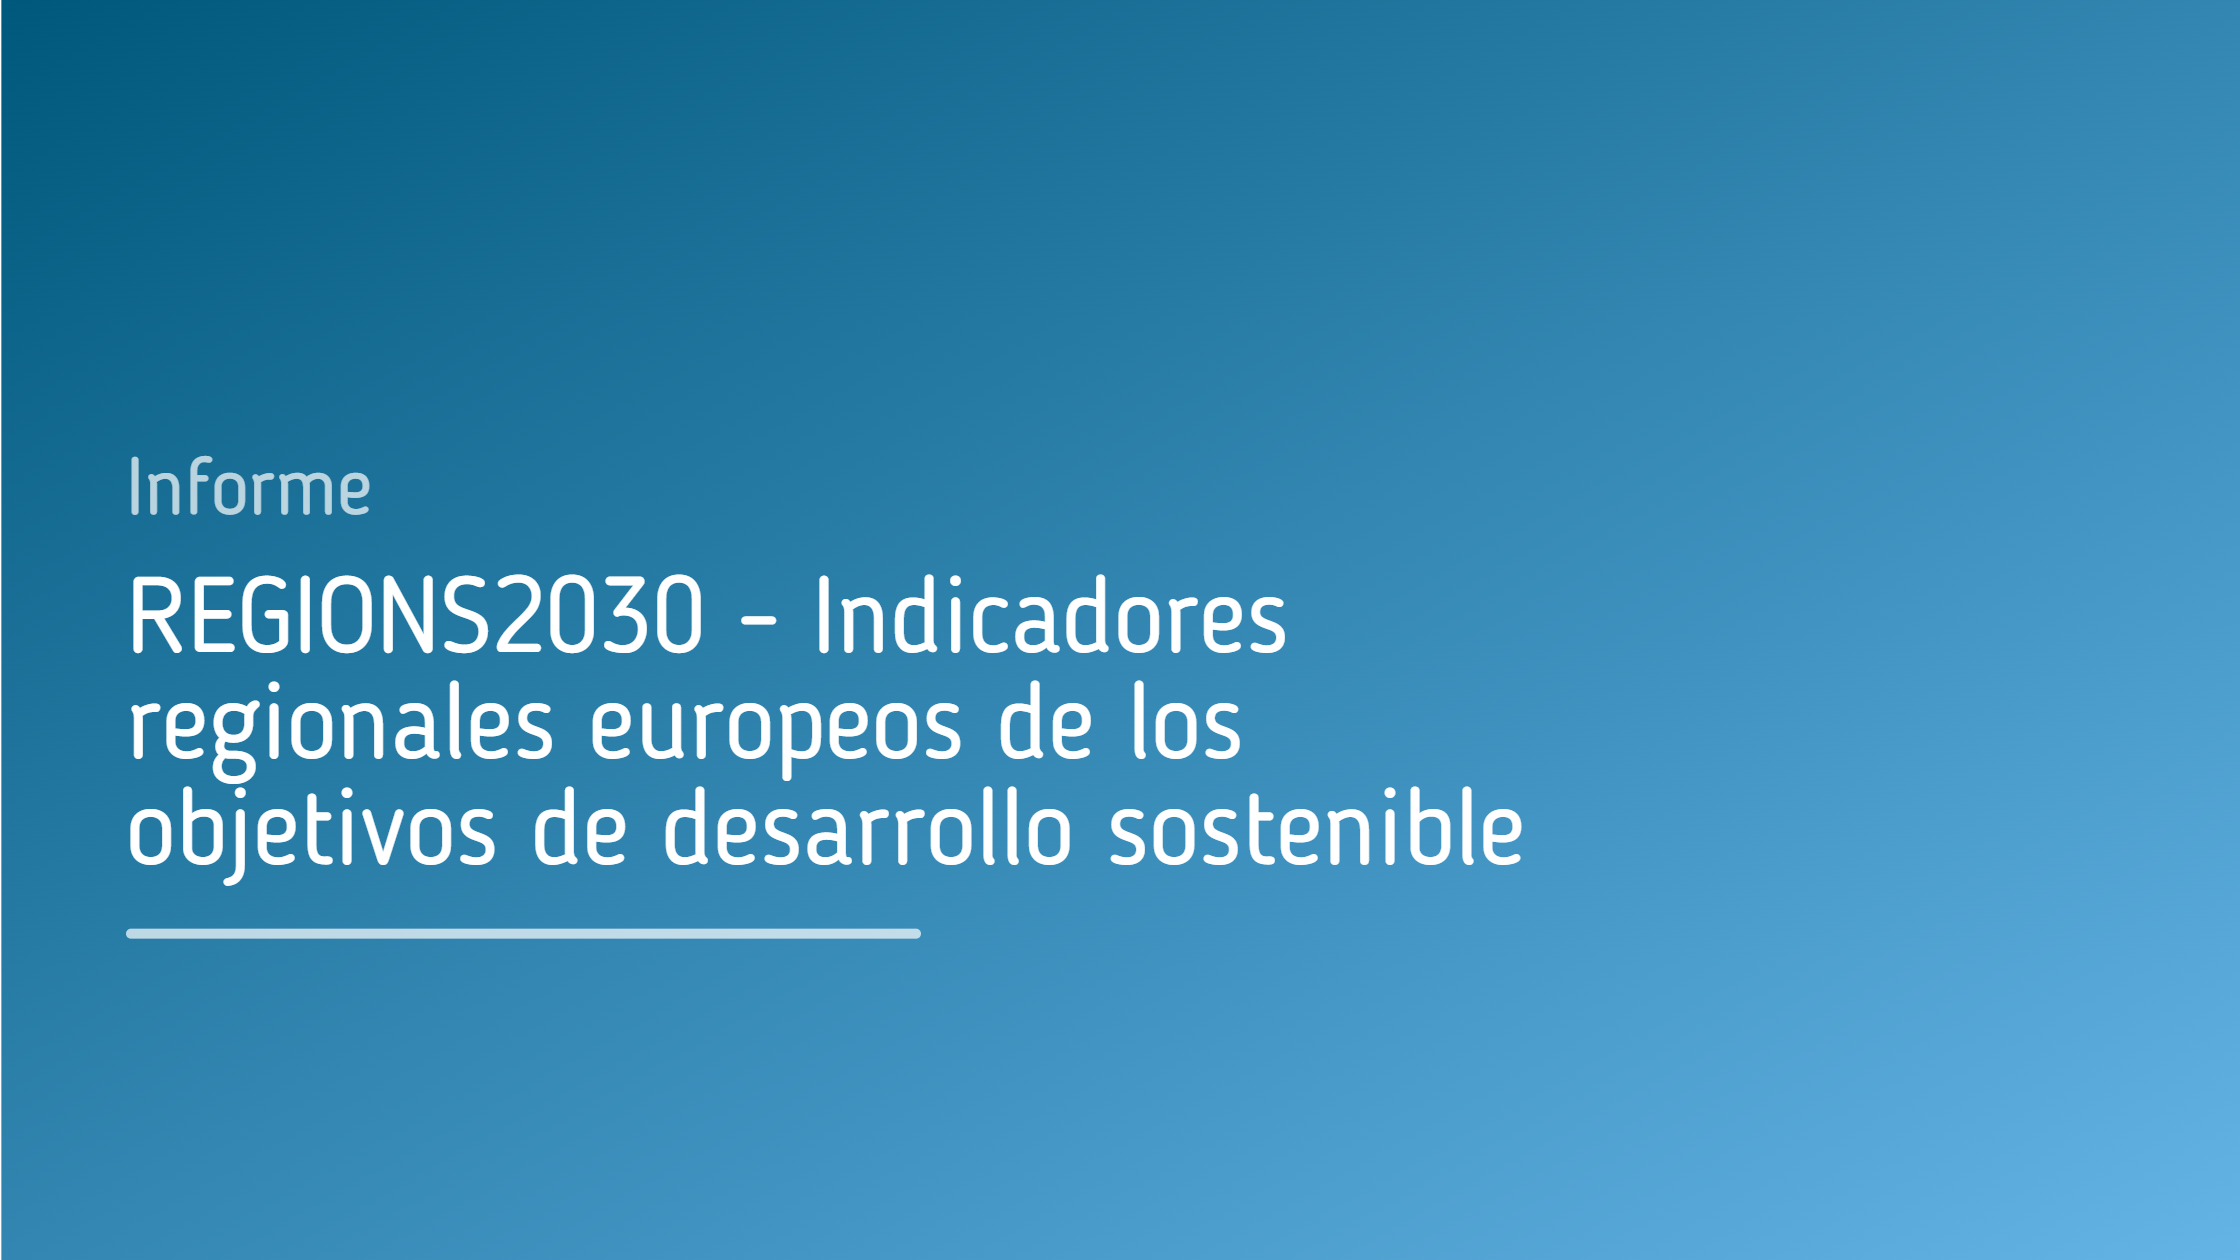 REGIONS2030_Indicadores_regionales_europeos_de_los_objetivos_de_desarrollo_sostenible